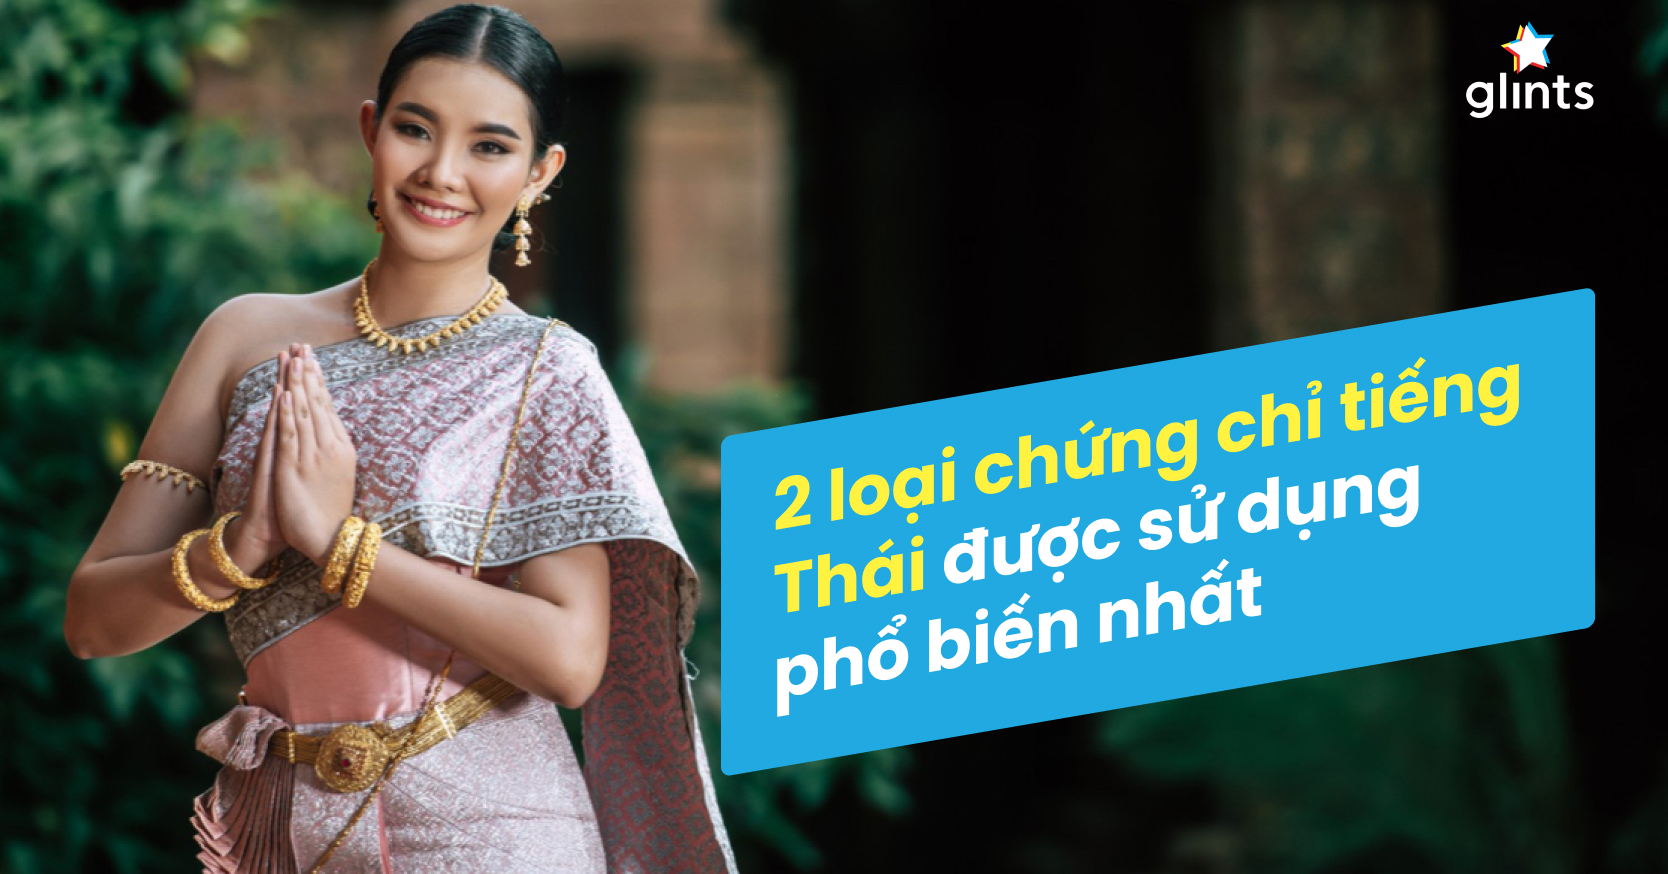 Chứng chỉ tiếng Thái nào được sử dụng phổ biến nhất hiện nay?